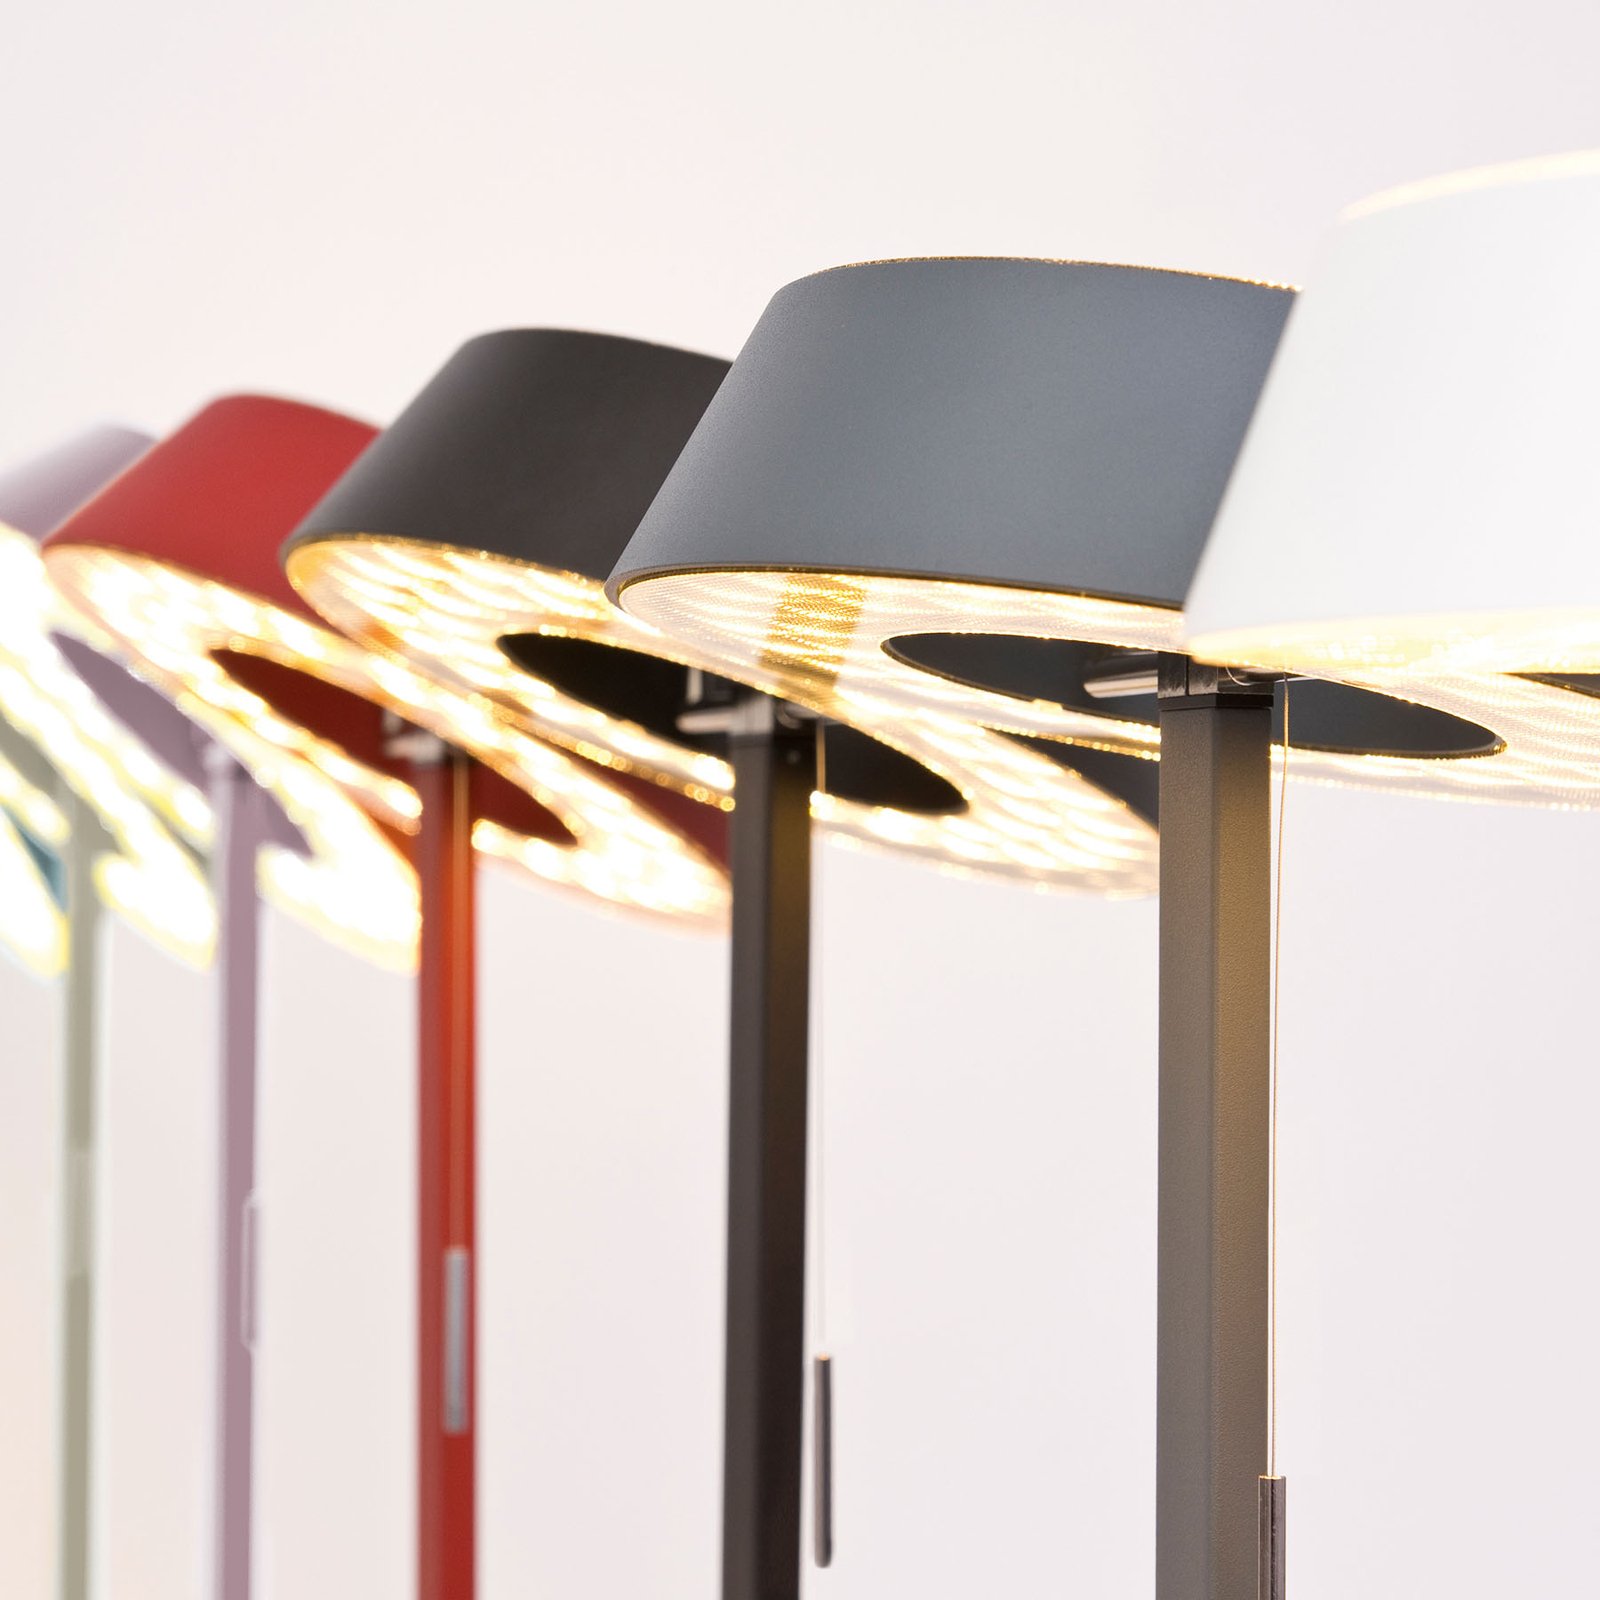 OLIGO Glance lampă de masă LED alb mat